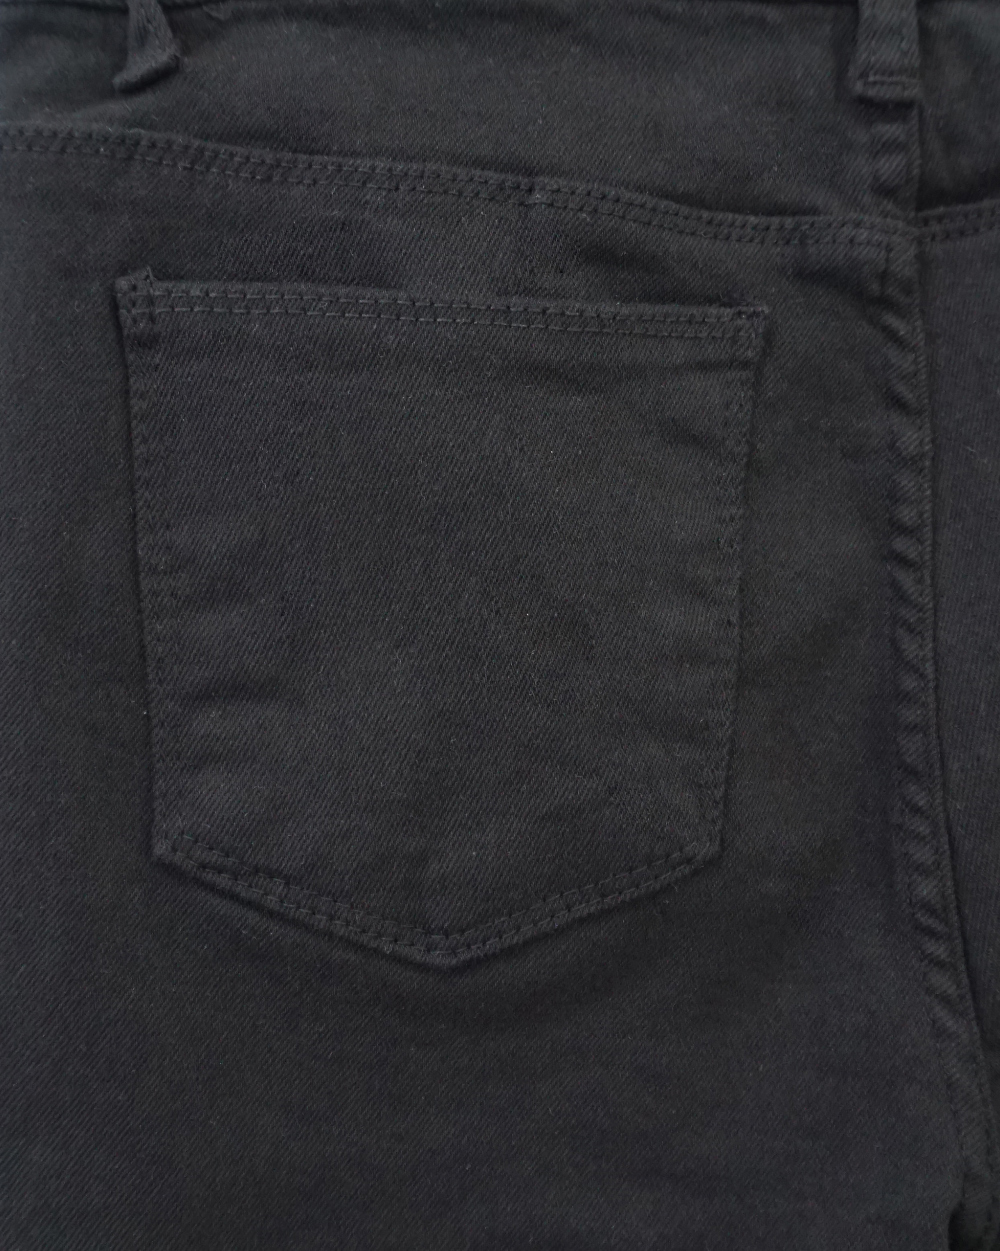 Pants detail image-S3L3